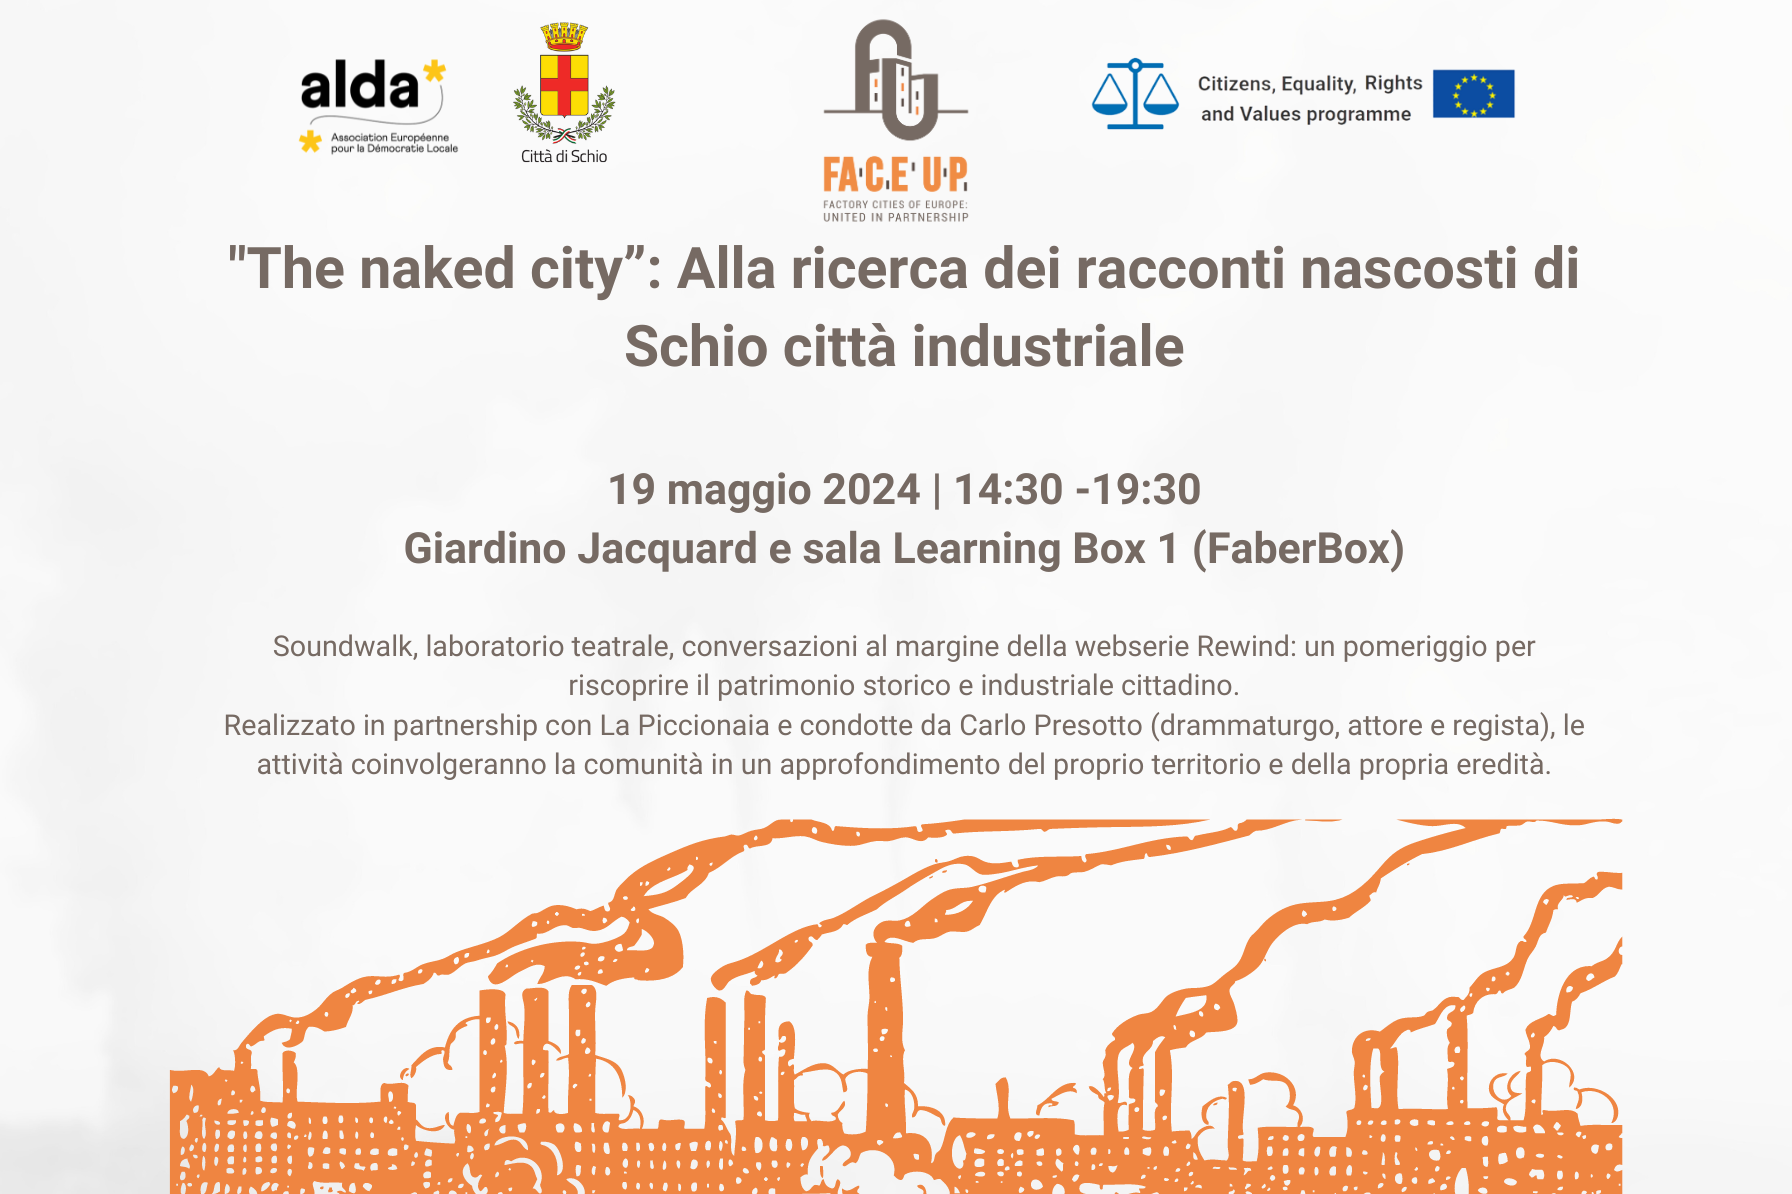 "The naked city”: Alla ricerca dei racconti nascosti di Schio città industriale